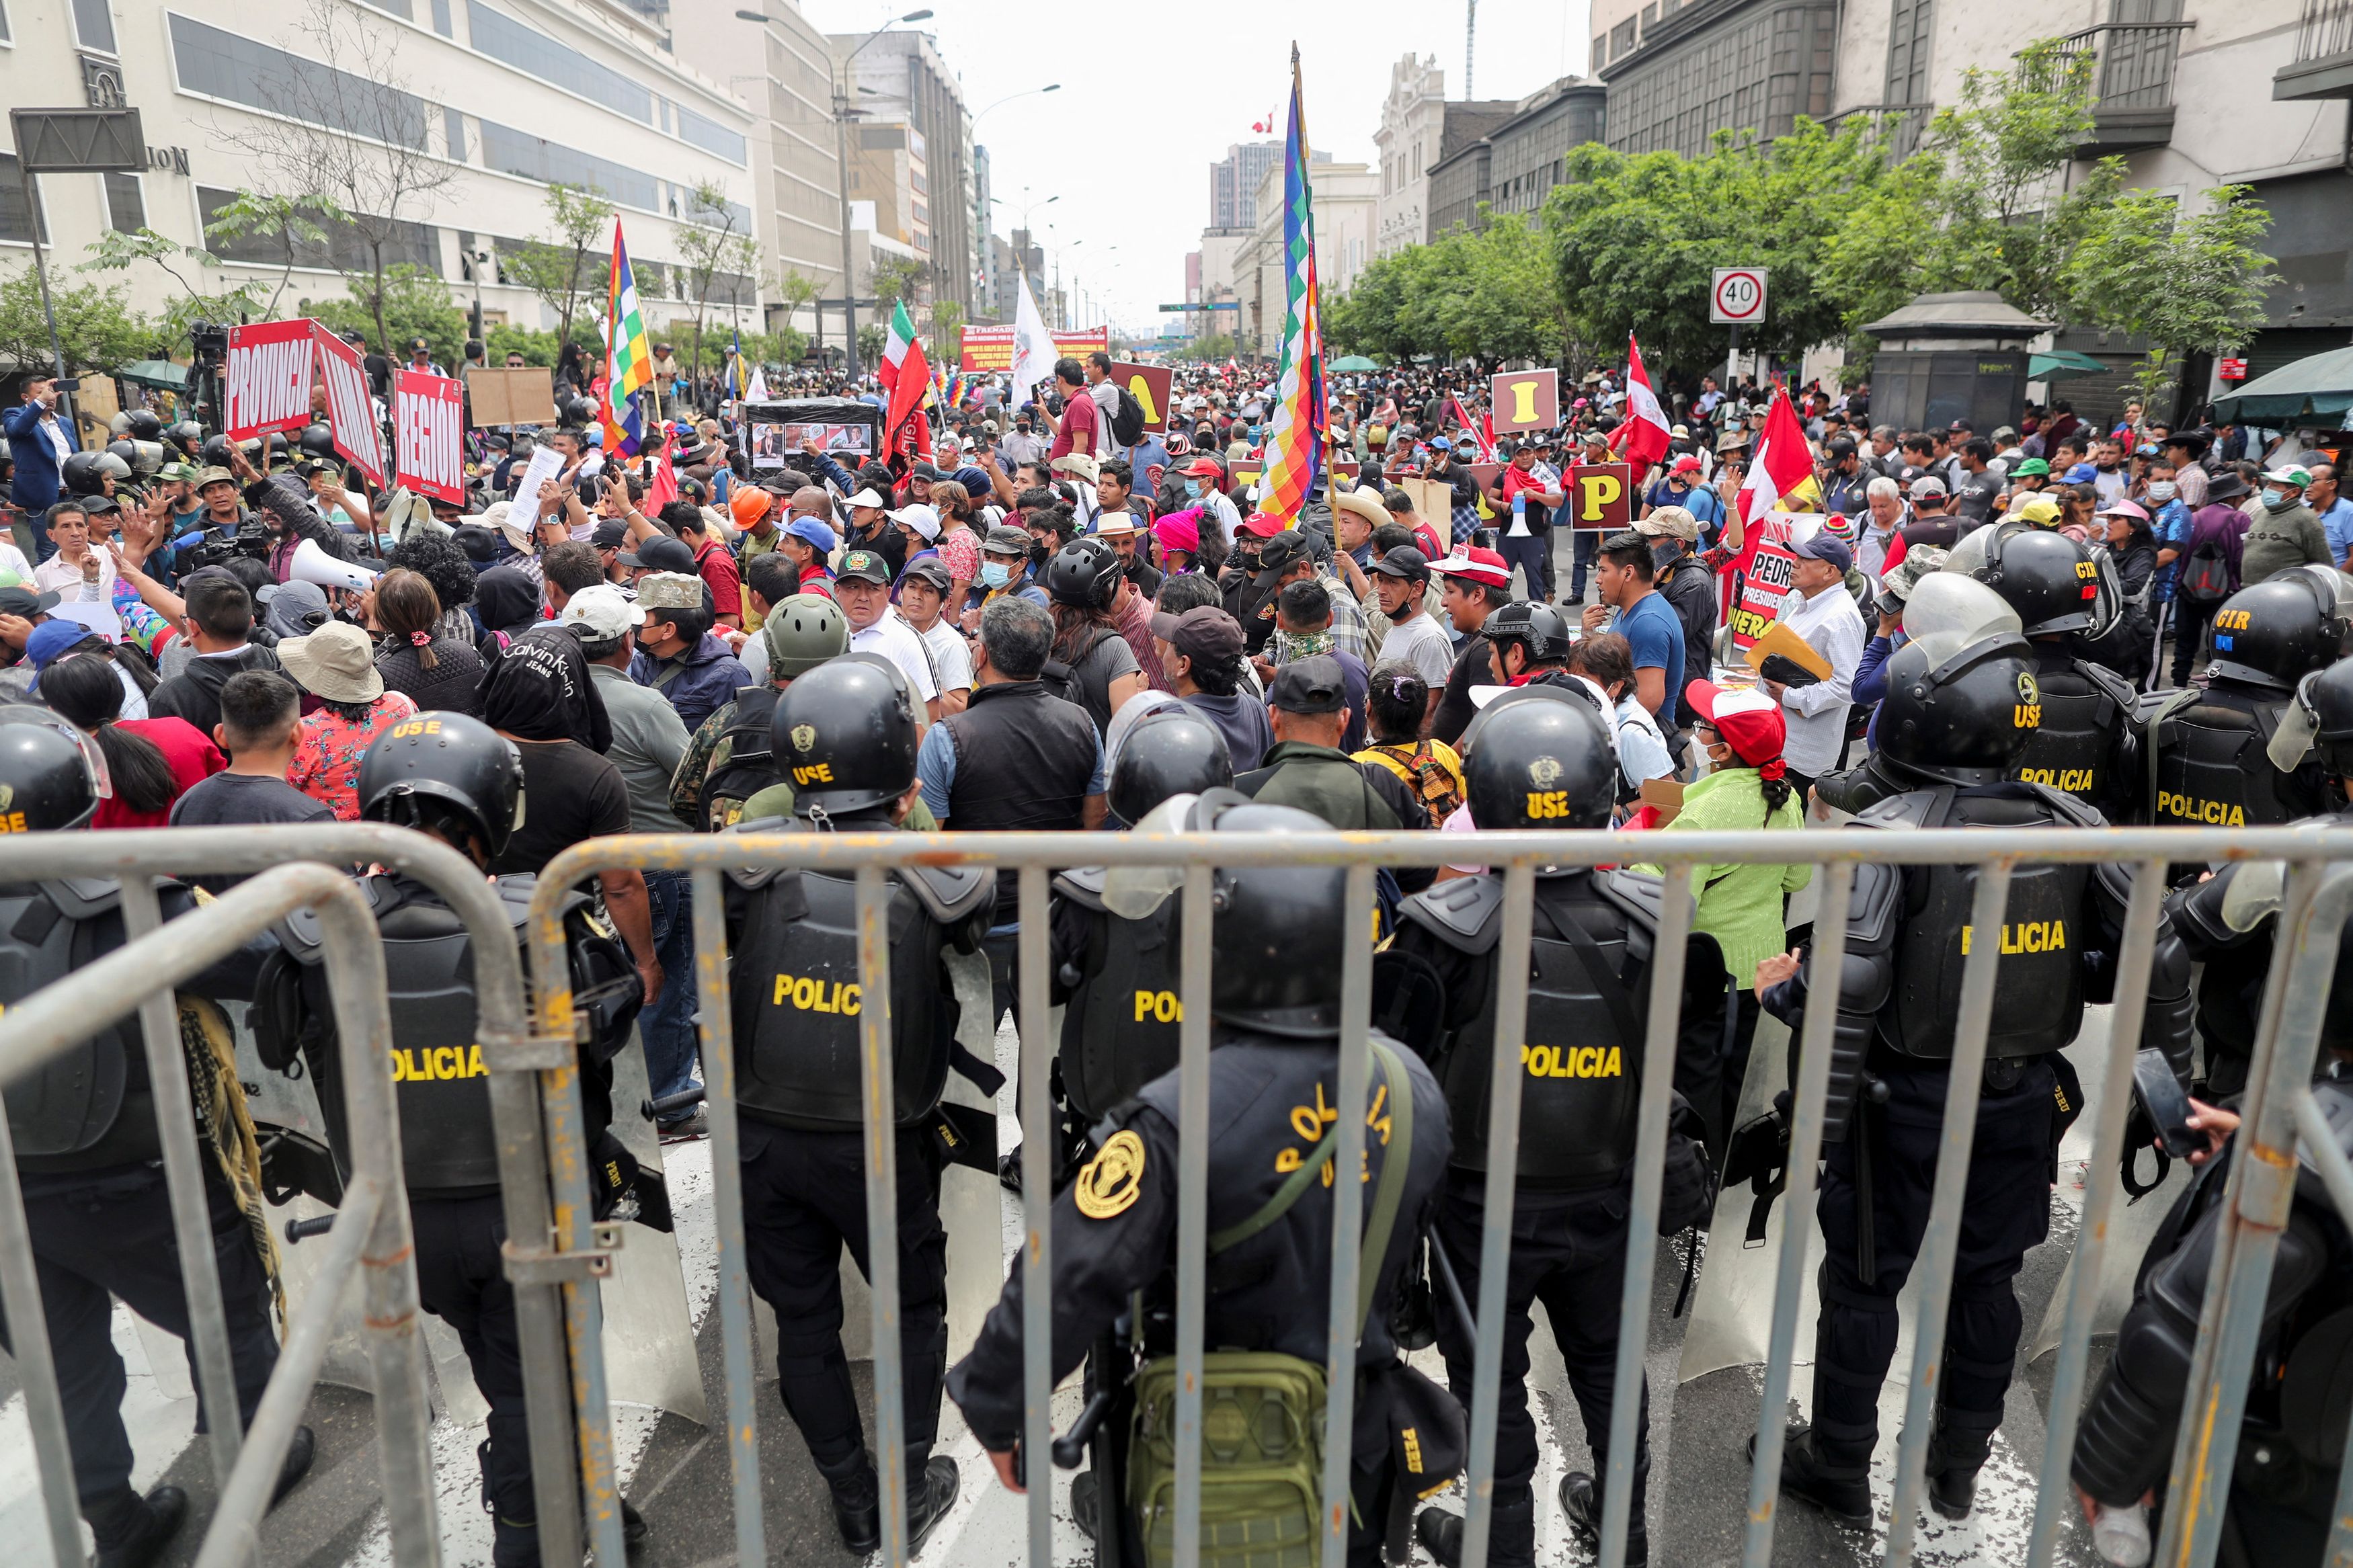 Περού: Στη δίνη πολιτικής κρίσης η χώρα - Να διαλύσει το Κογκρέσο ήθελε ο πρόεδρος Καστίγιο, καθαιρέθηκε μετά από ψηφοφορία